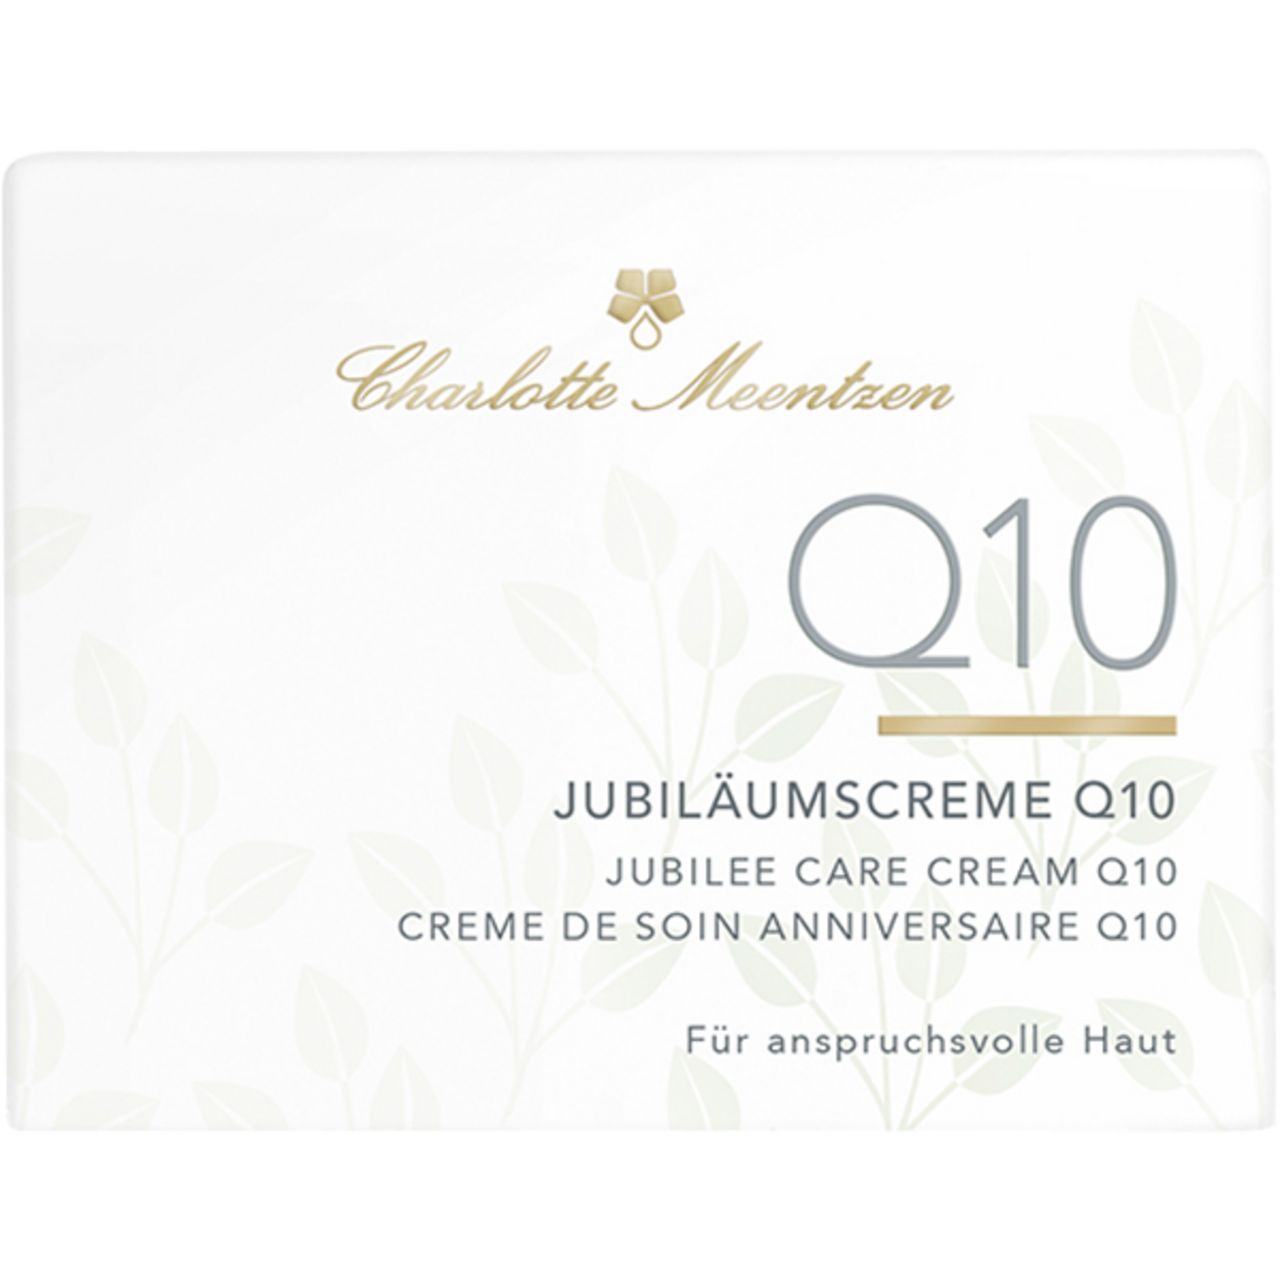 Charlotte Meentzen Jubiläumscreme Q10 Pure Gold